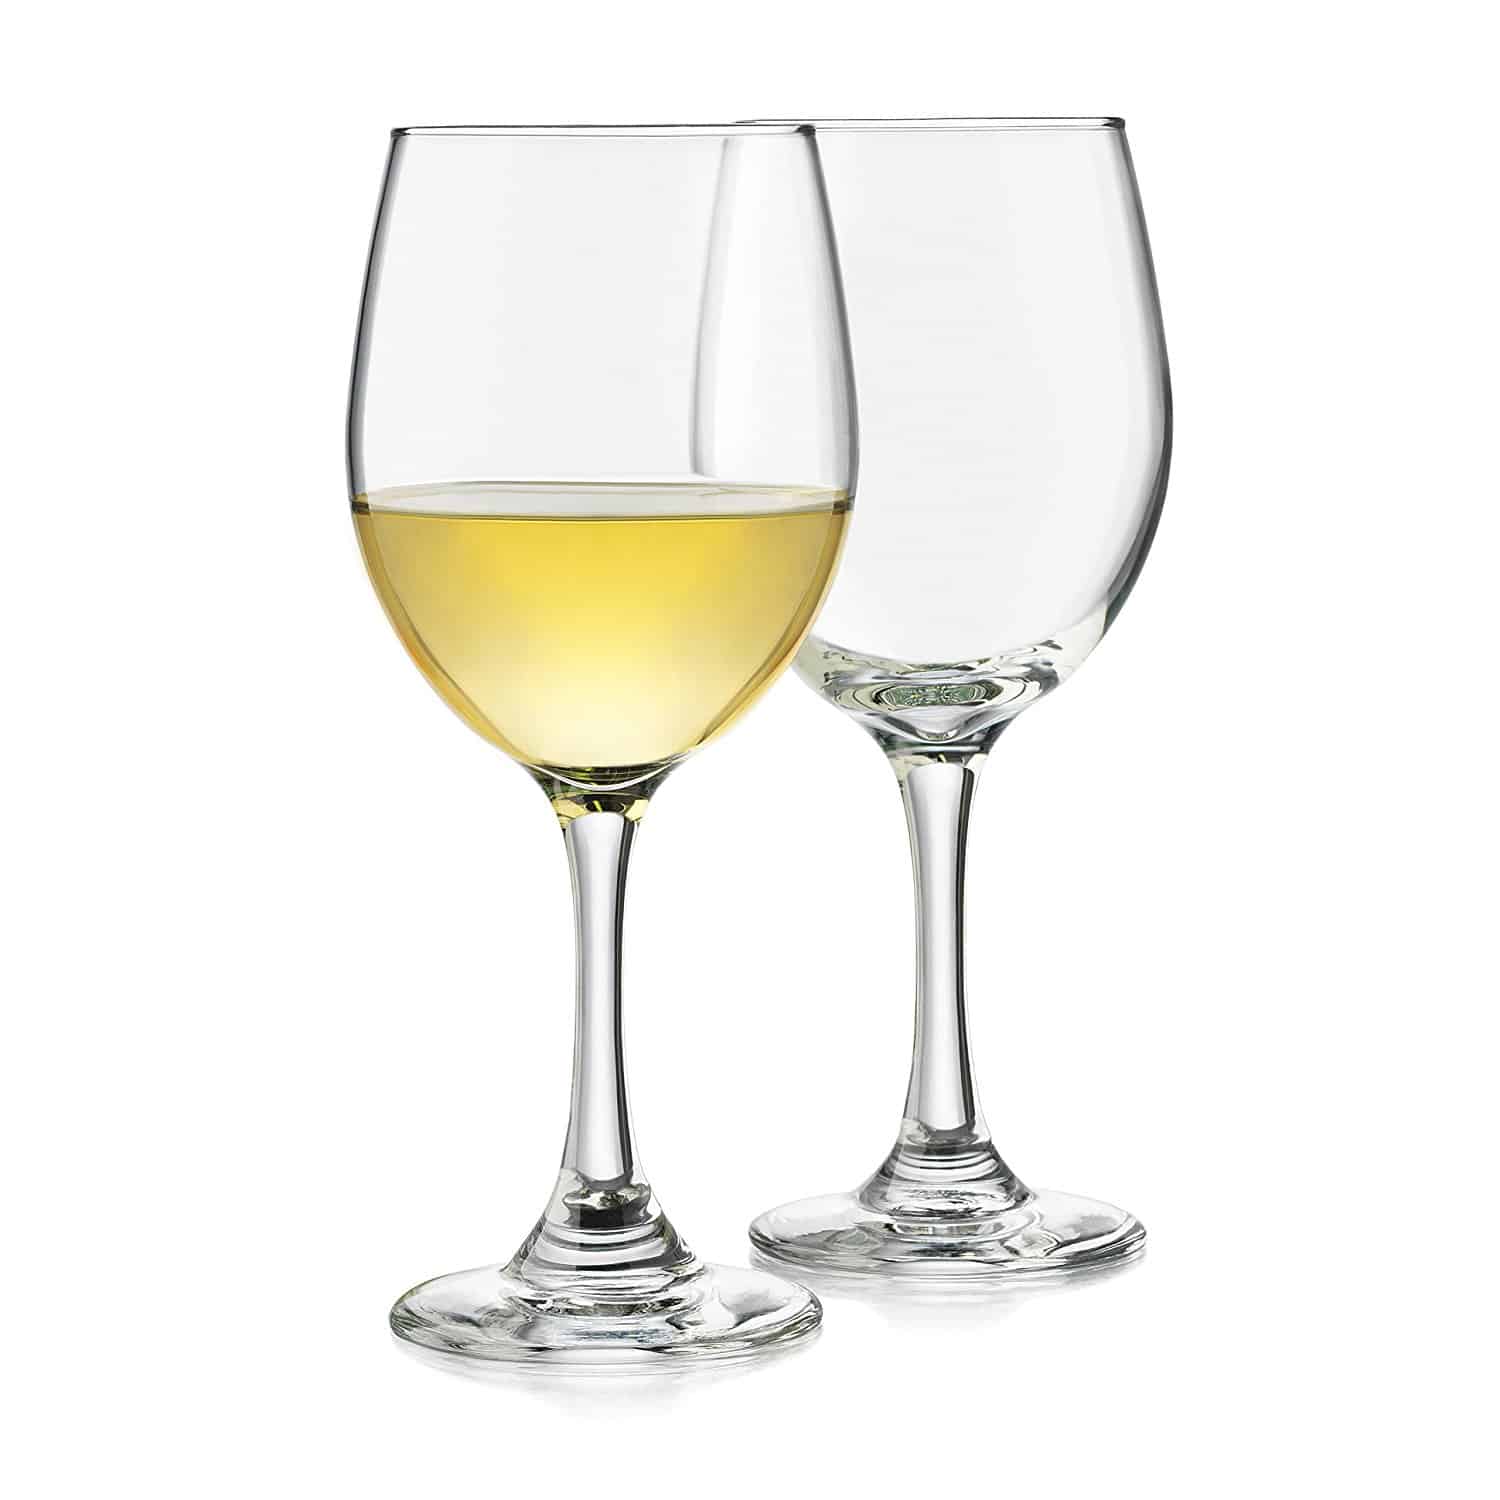 白葡萄酒杯与永恒的设计和洗碗机安全。